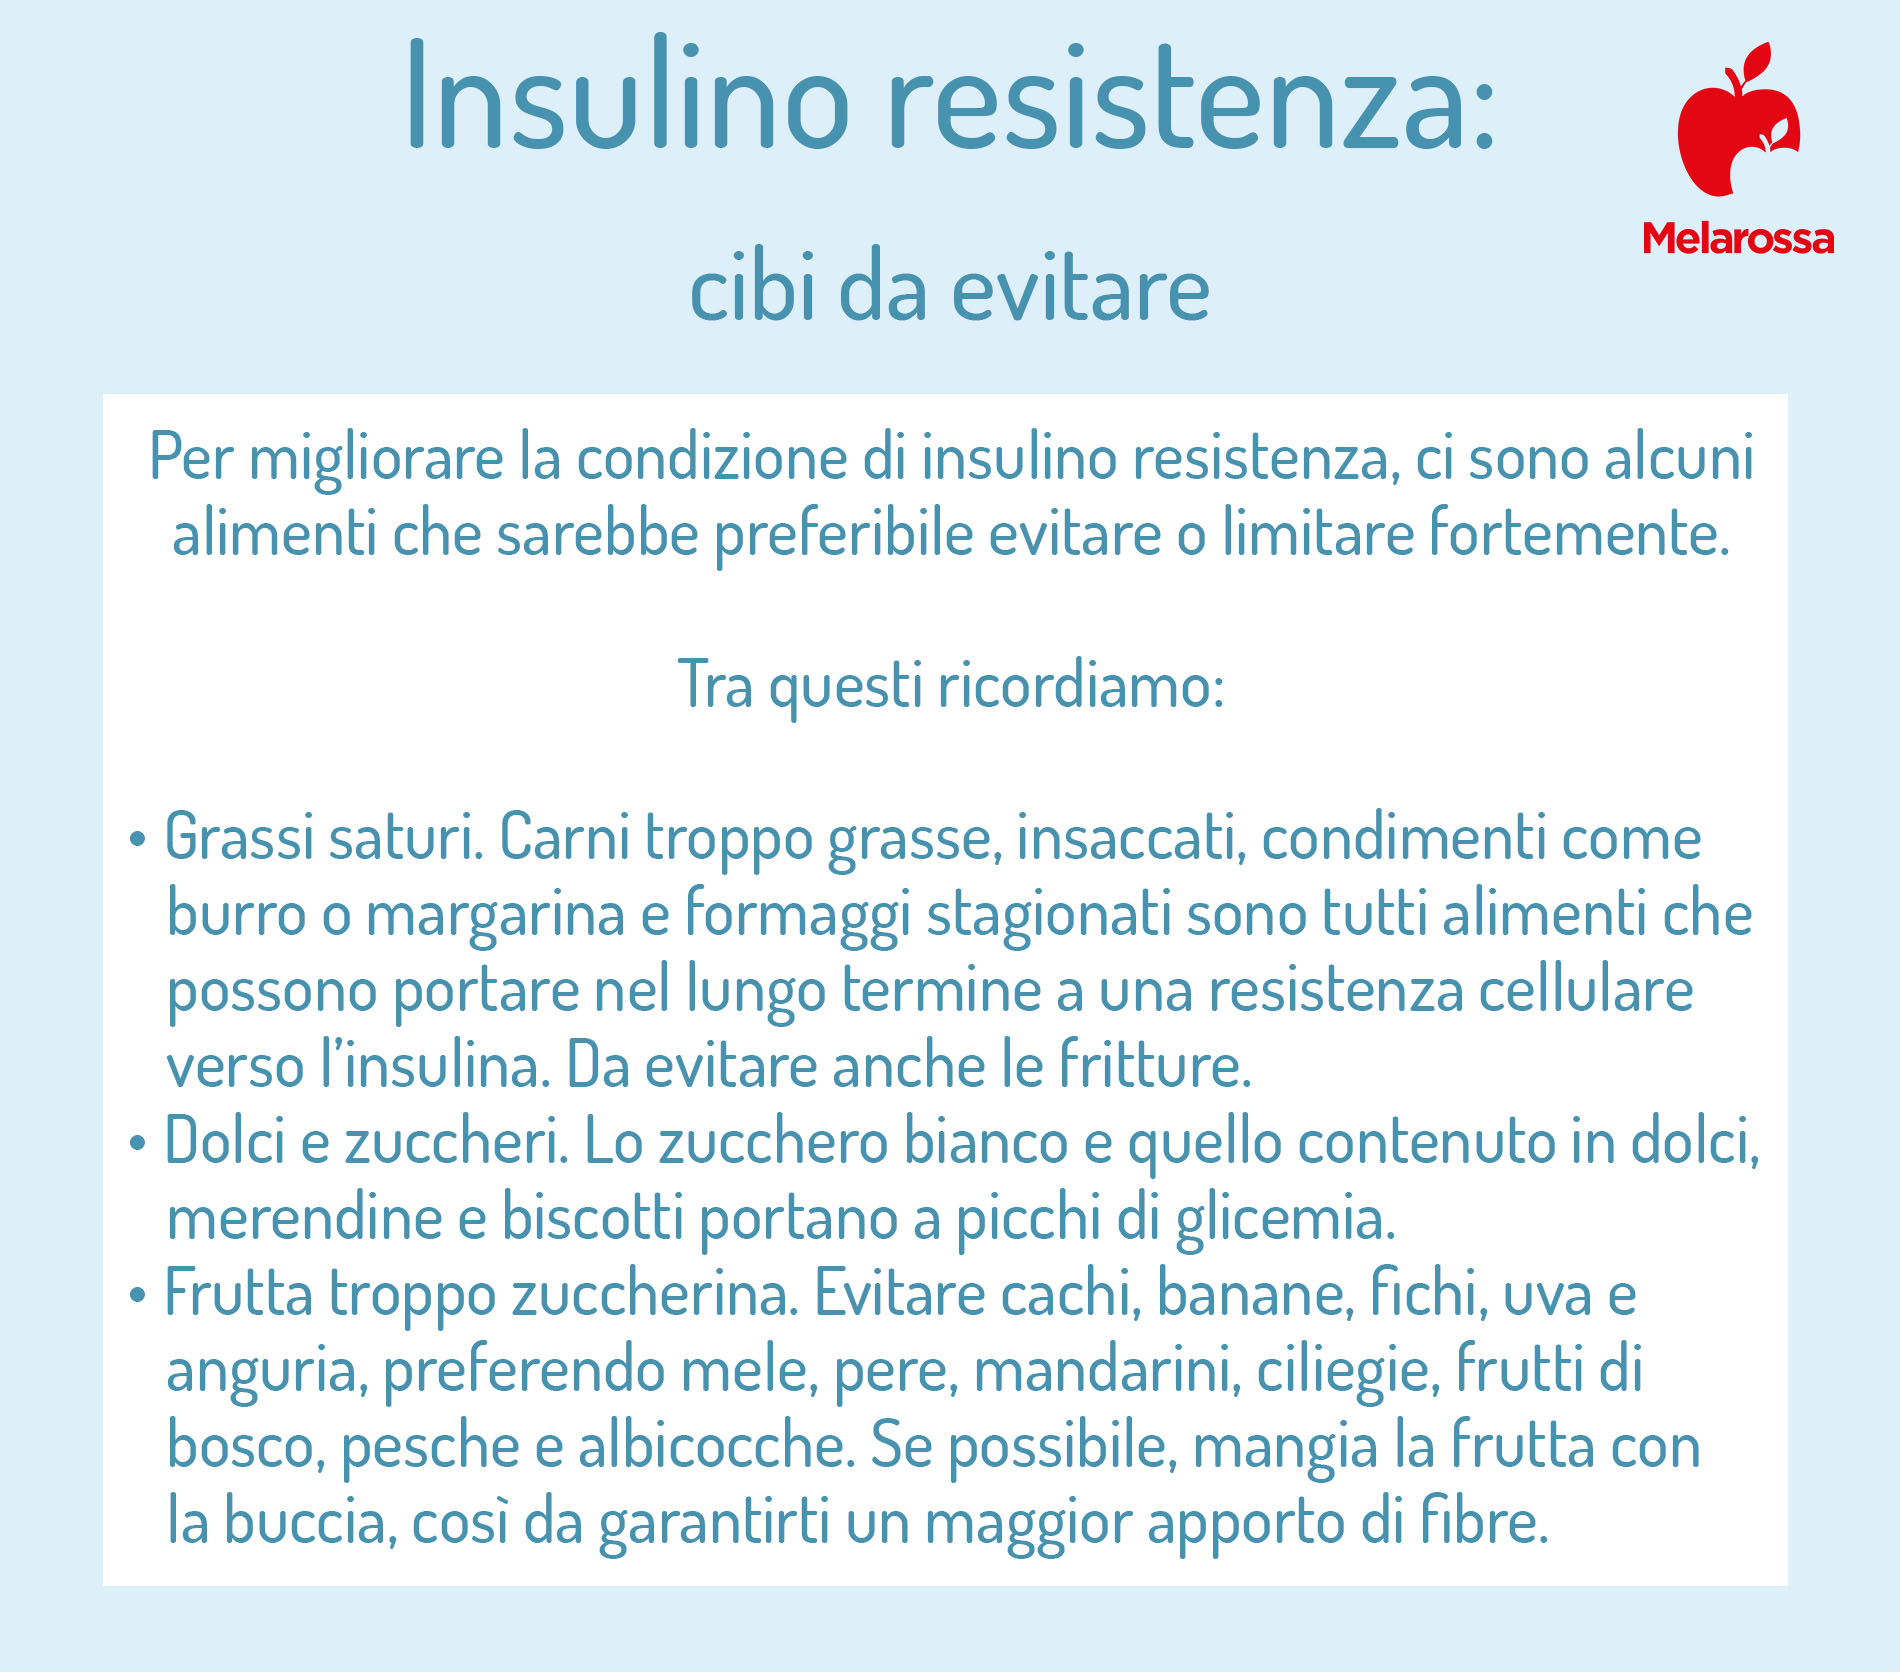 insulino resistenza: cibi da evitare 